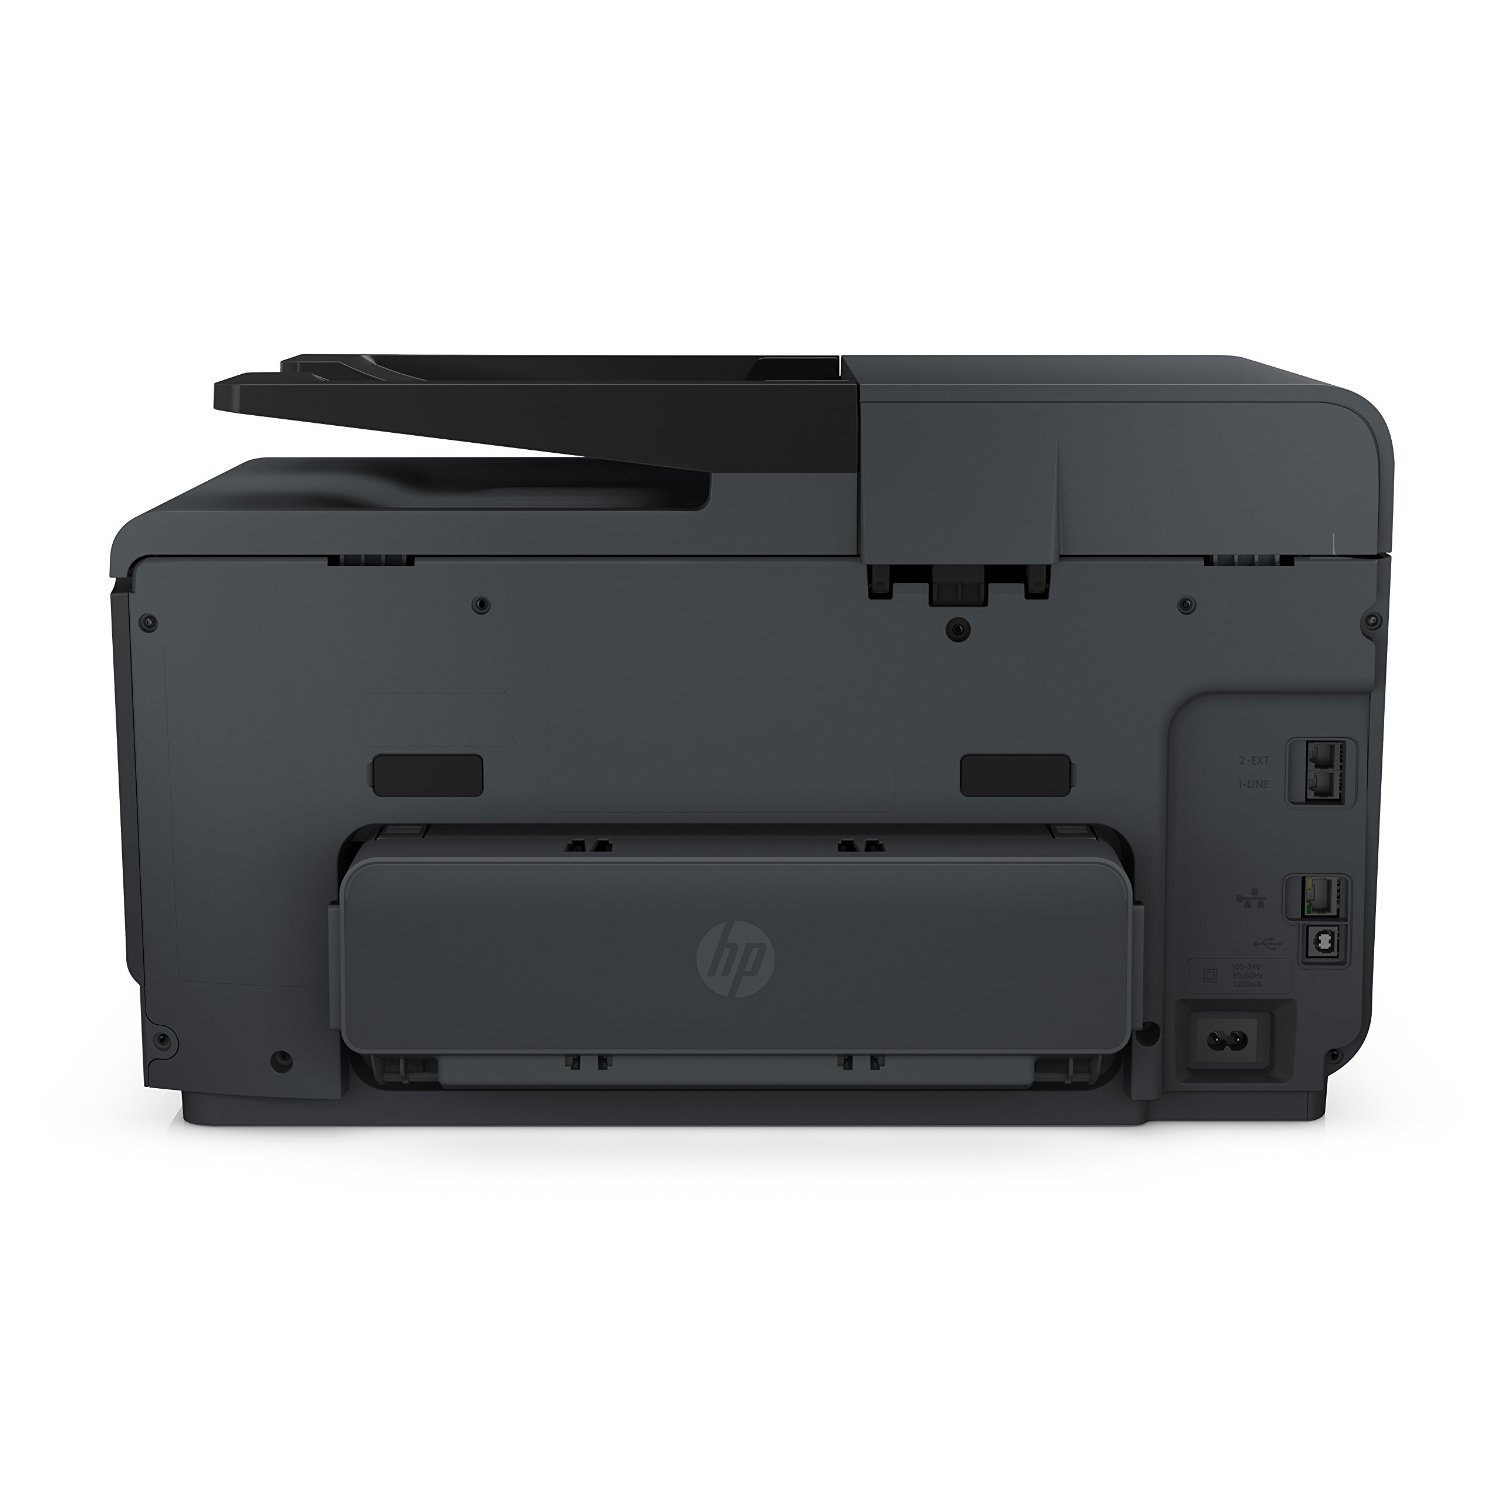 HP OfficeJet Pro 8610 Wireless All-in-One Color Inkjet Printer